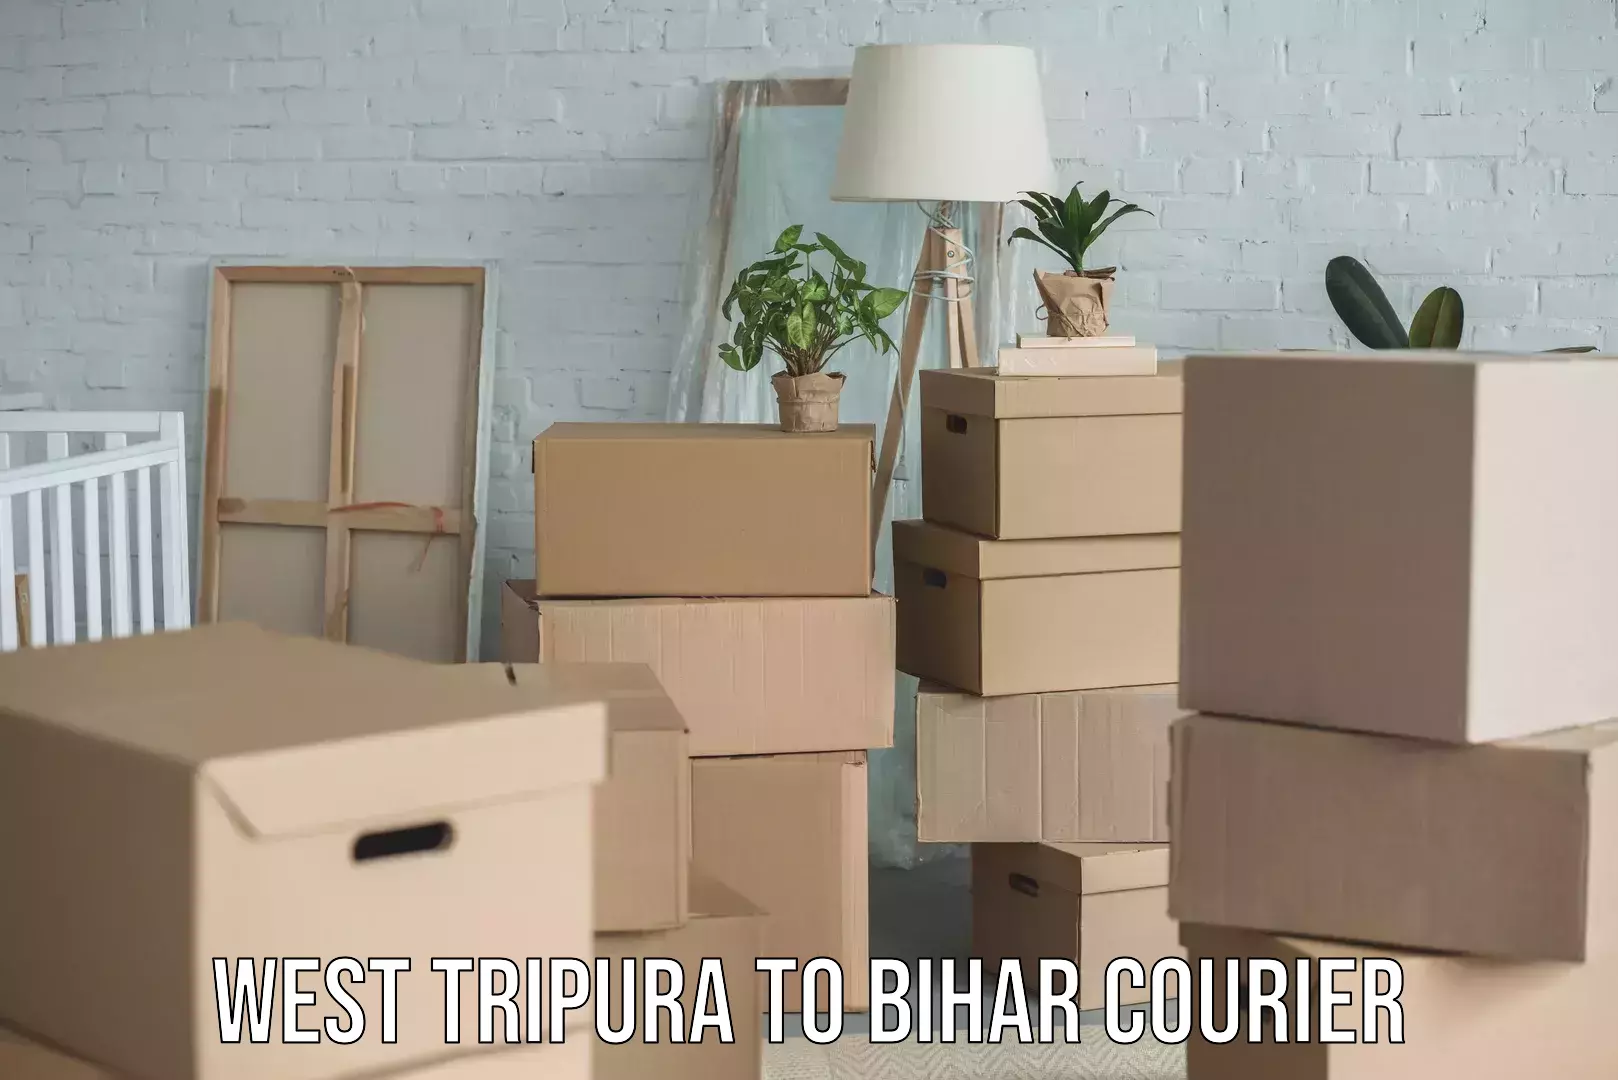 Efficient cargo handling in West Tripura to Bihar